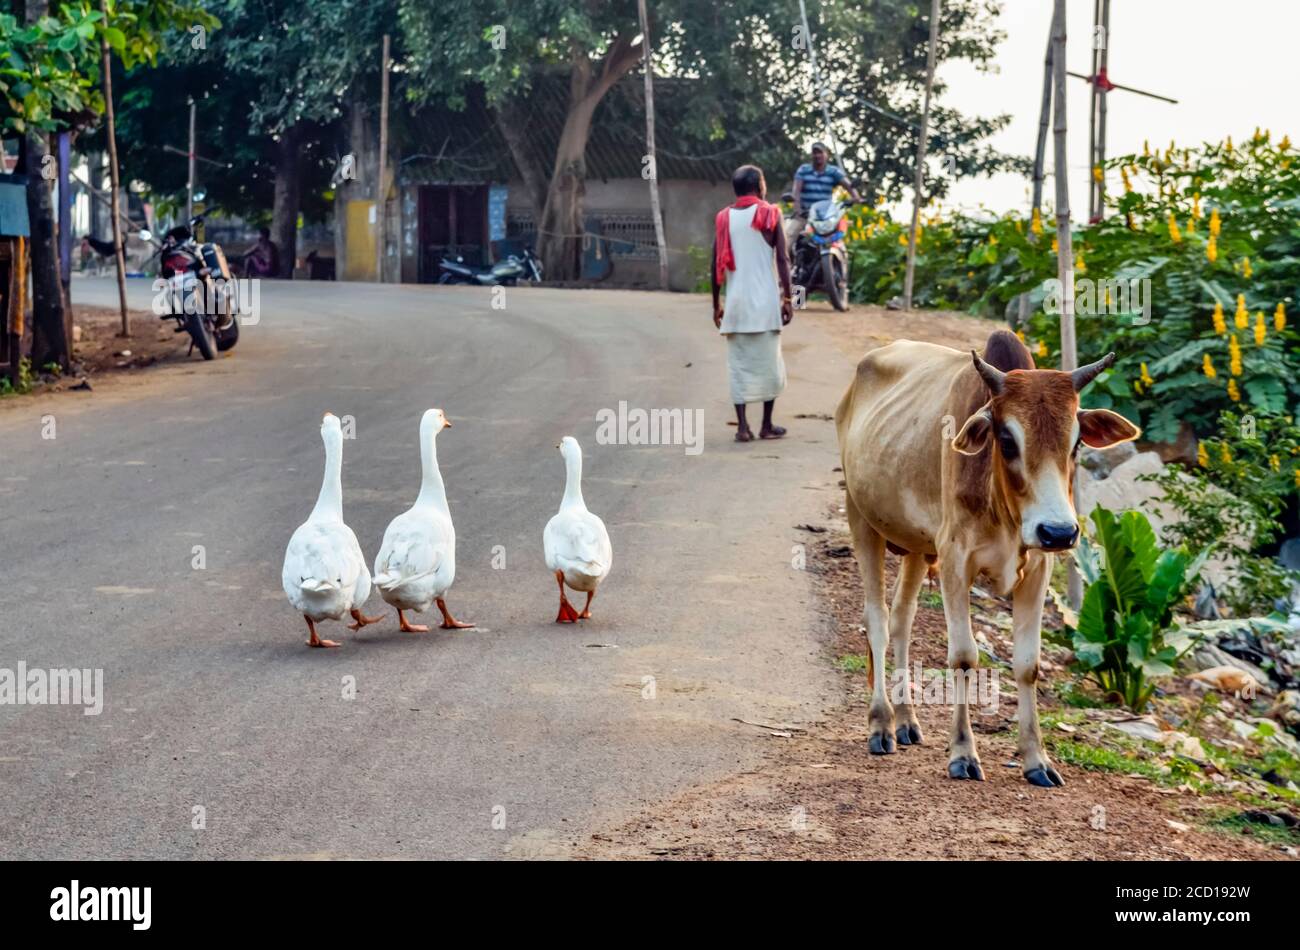 Oche bianche che passeggiano nel mezzo della strada con una mucca e moto parcheggiate; Chandipur, distretto di Baleswar, Stato di Odisha, India Foto Stock